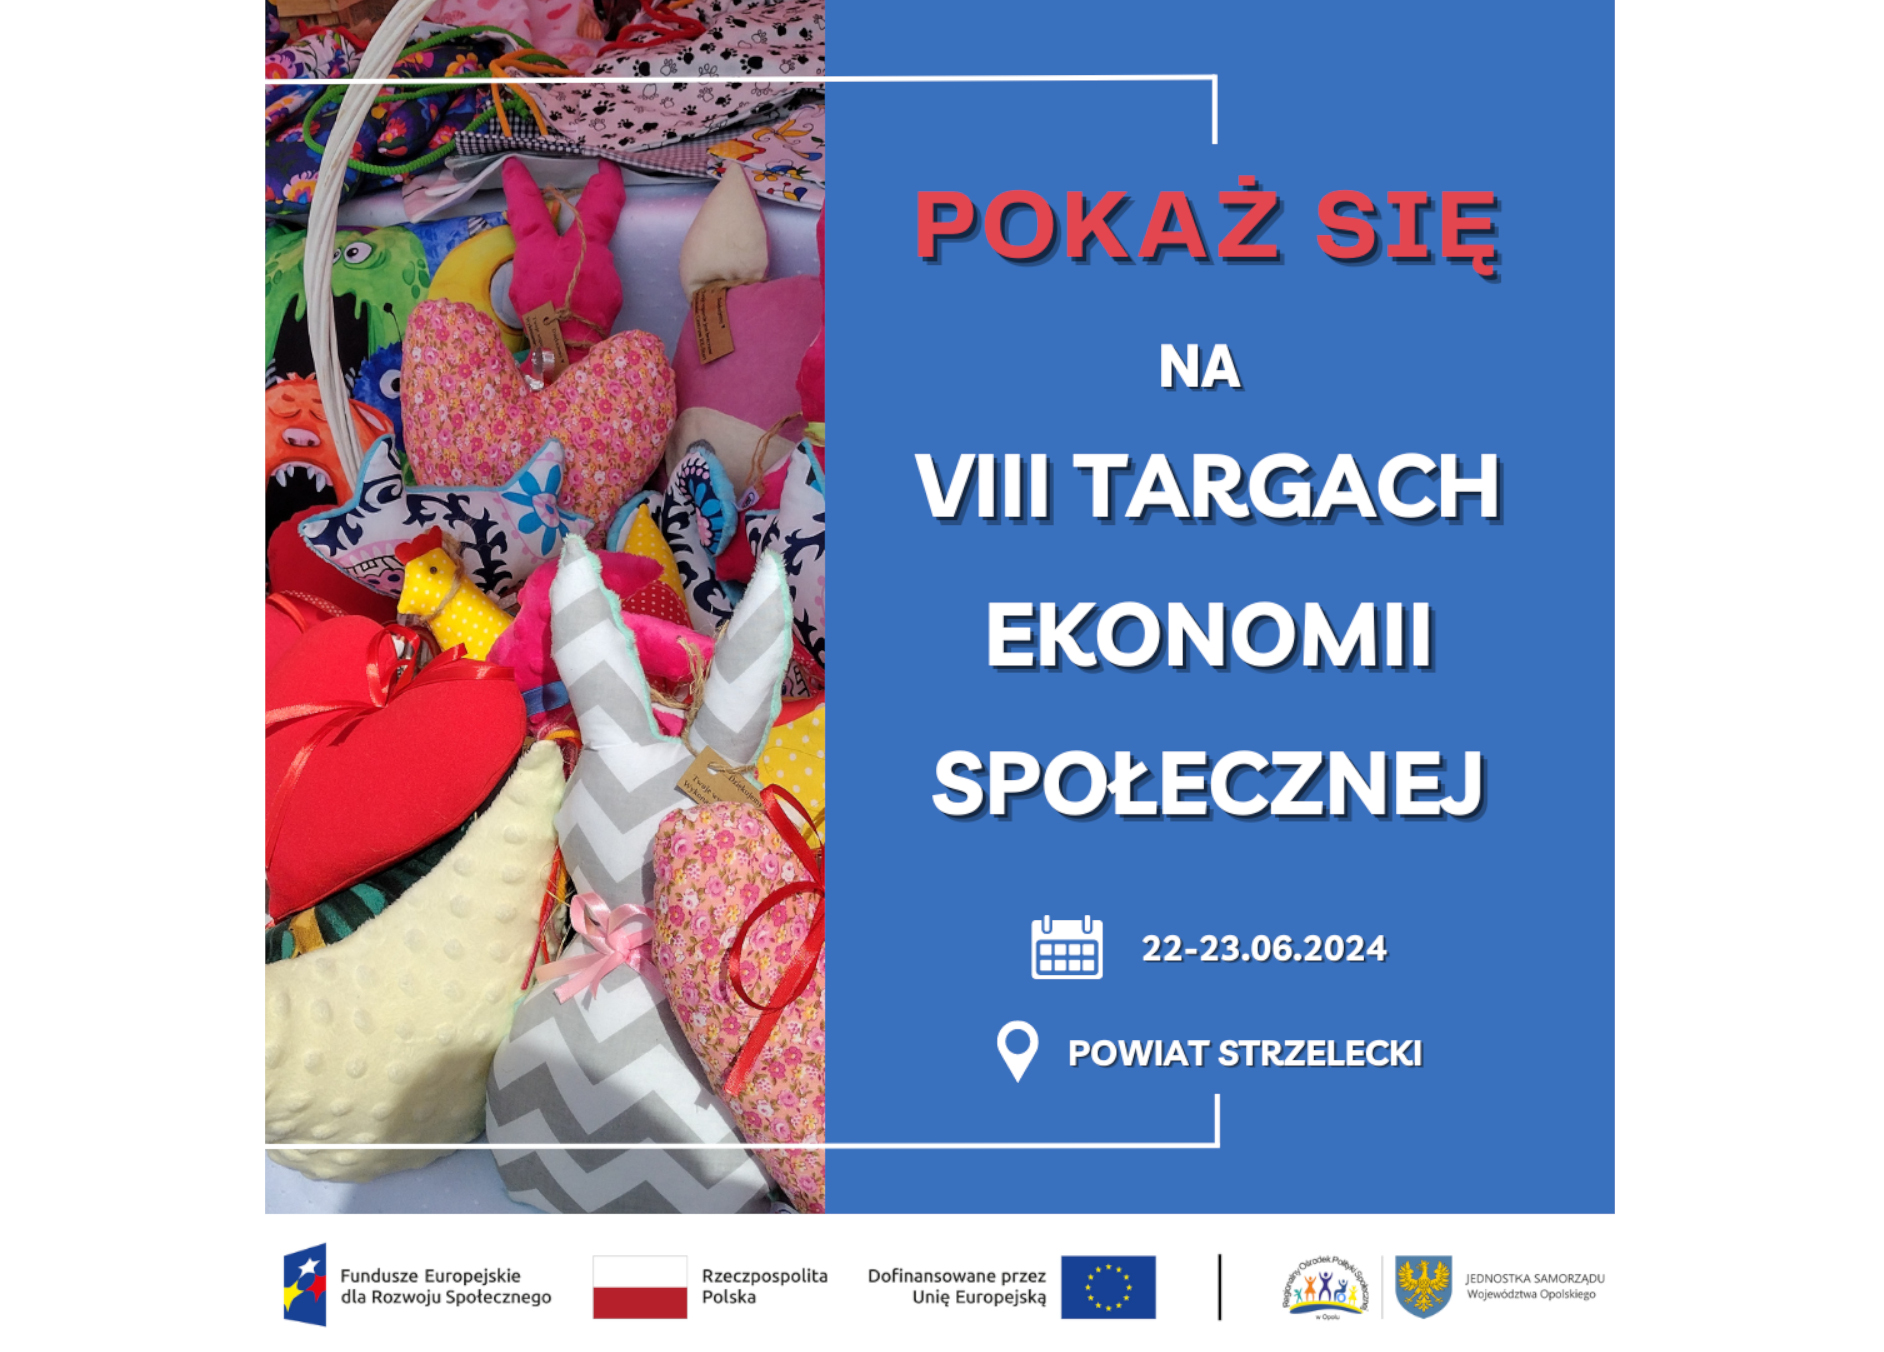 Pokaż się na VIII targach ekonomii społecznej 22-23.06.2024 r. Powiat Strzelecki